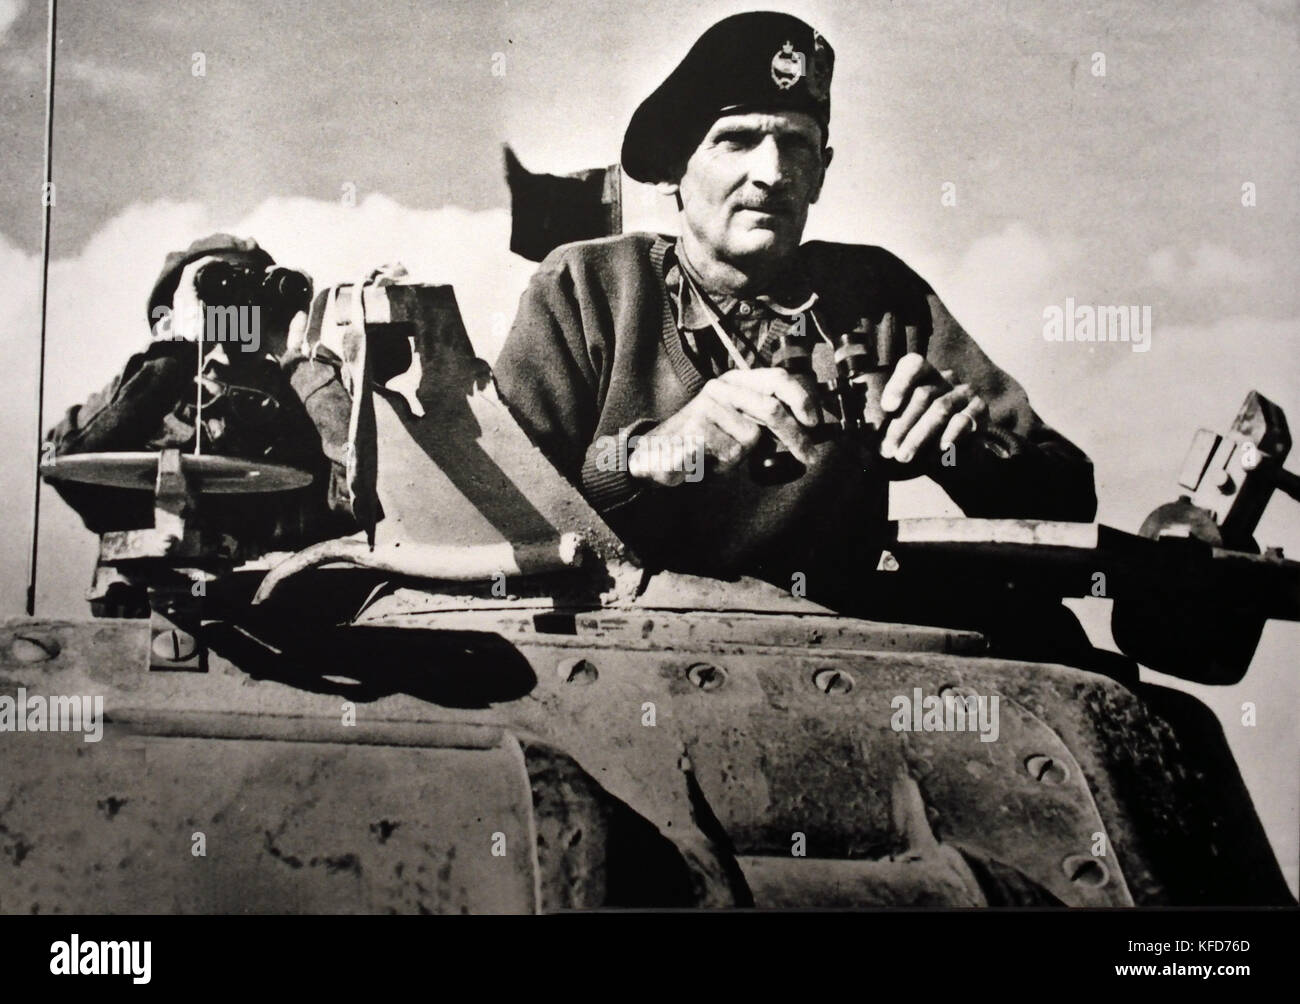 Le général Montgomery, le commandement de la 8e Armée britannique 1942 World War II ( Maréchal Bernard Law Montgomery, 1er Vicomte Montgomery d'Alamein, 1887 -1976 ( surnommé Monty et le général spartiate ) était un haut officier de l'armée britannique qui a combattu dans la Première Guerre mondiale et la seconde guerre mondiale. ) Banque D'Images